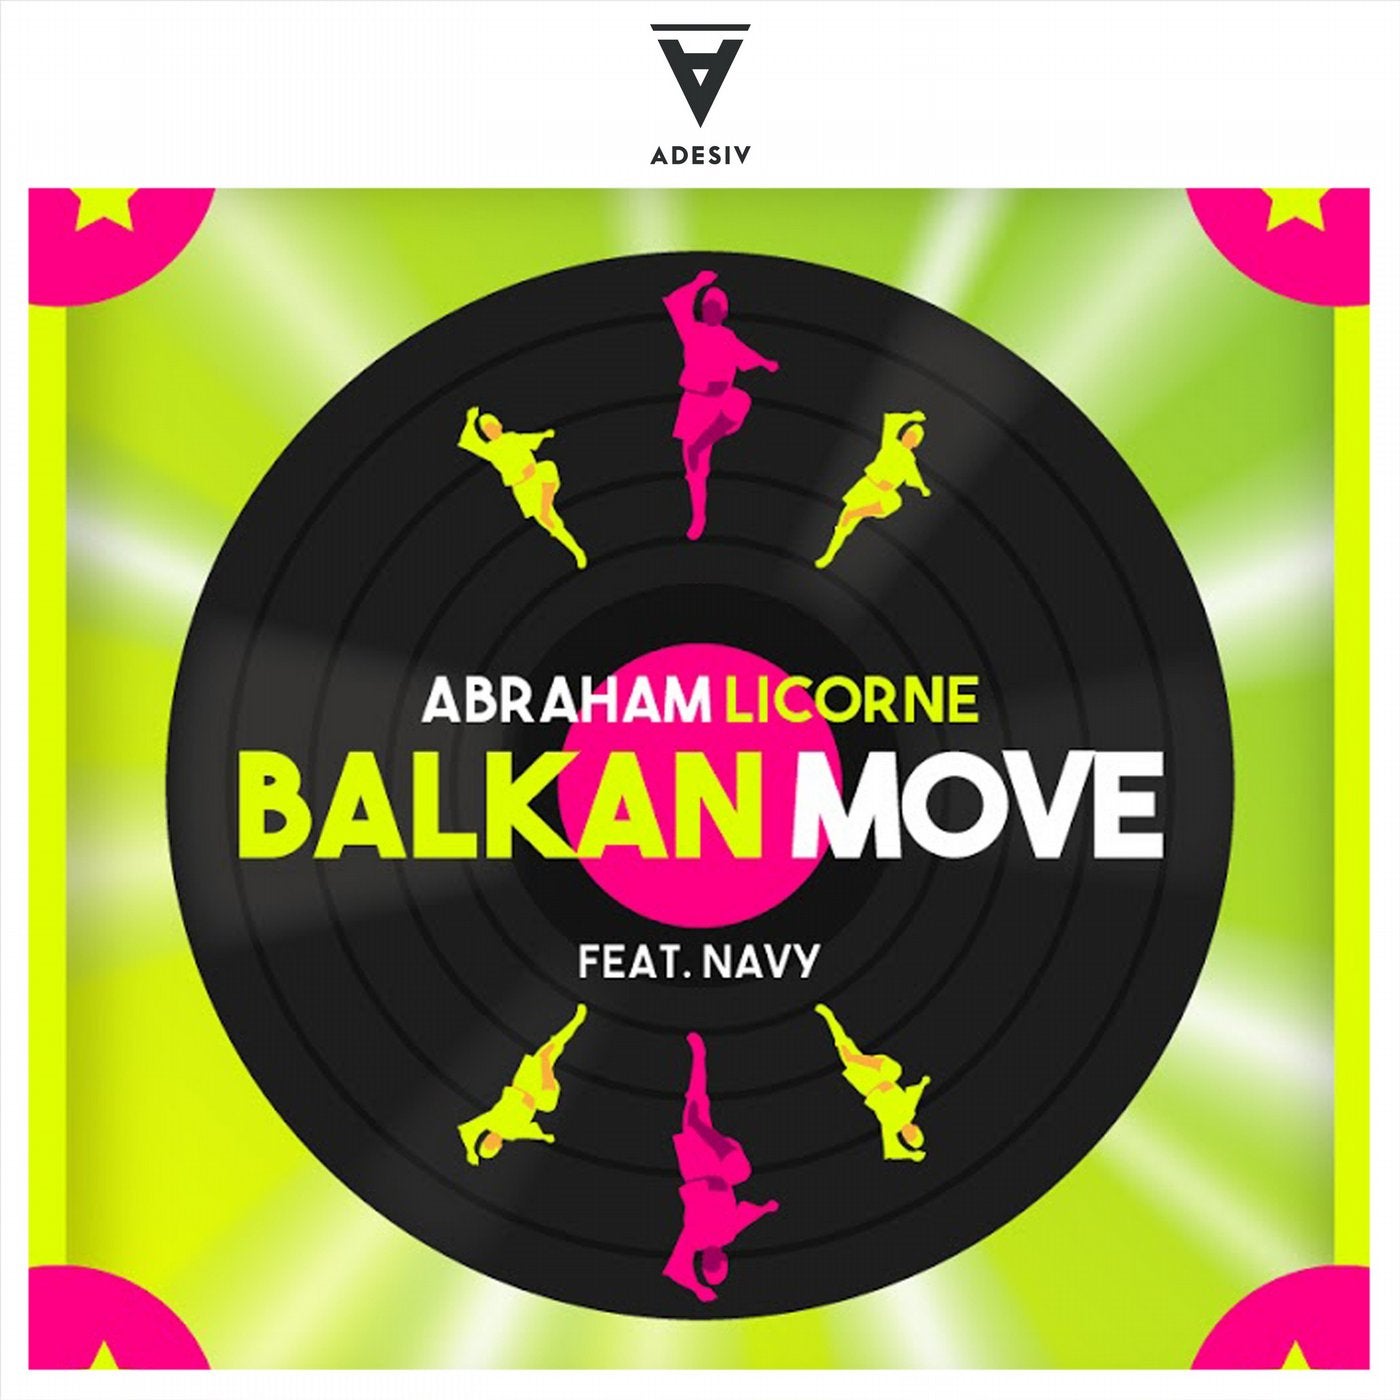 Balkan Move